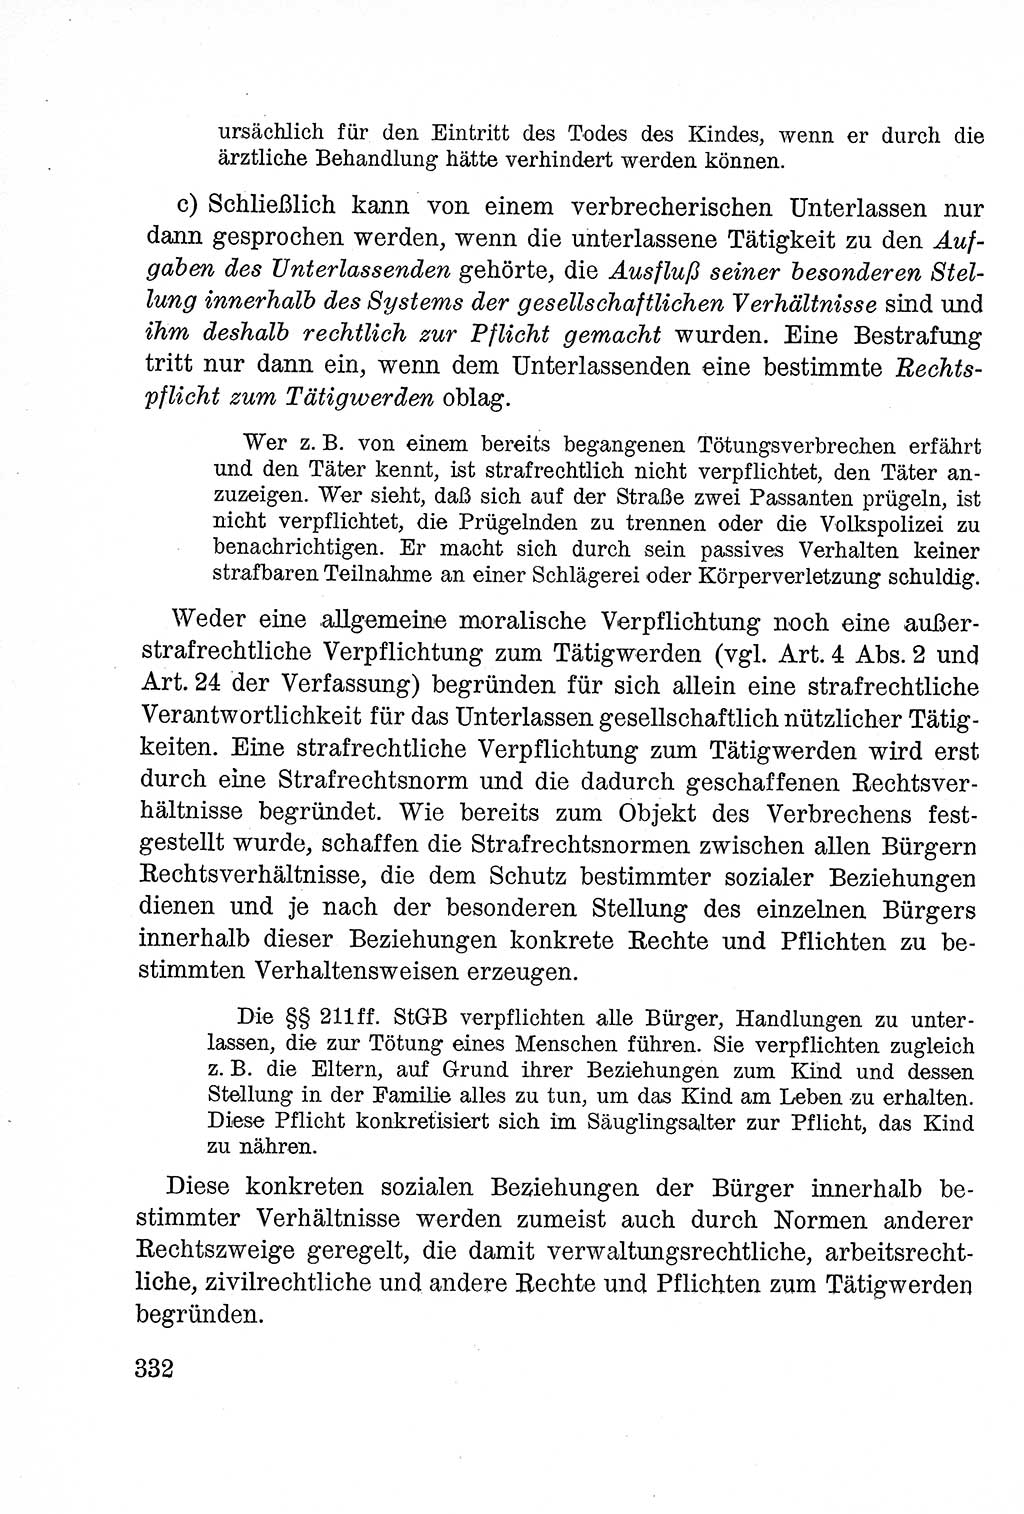 Lehrbuch des Strafrechts der Deutschen Demokratischen Republik (DDR), Allgemeiner Teil 1957, Seite 332 (Lb. Strafr. DDR AT 1957, S. 332)